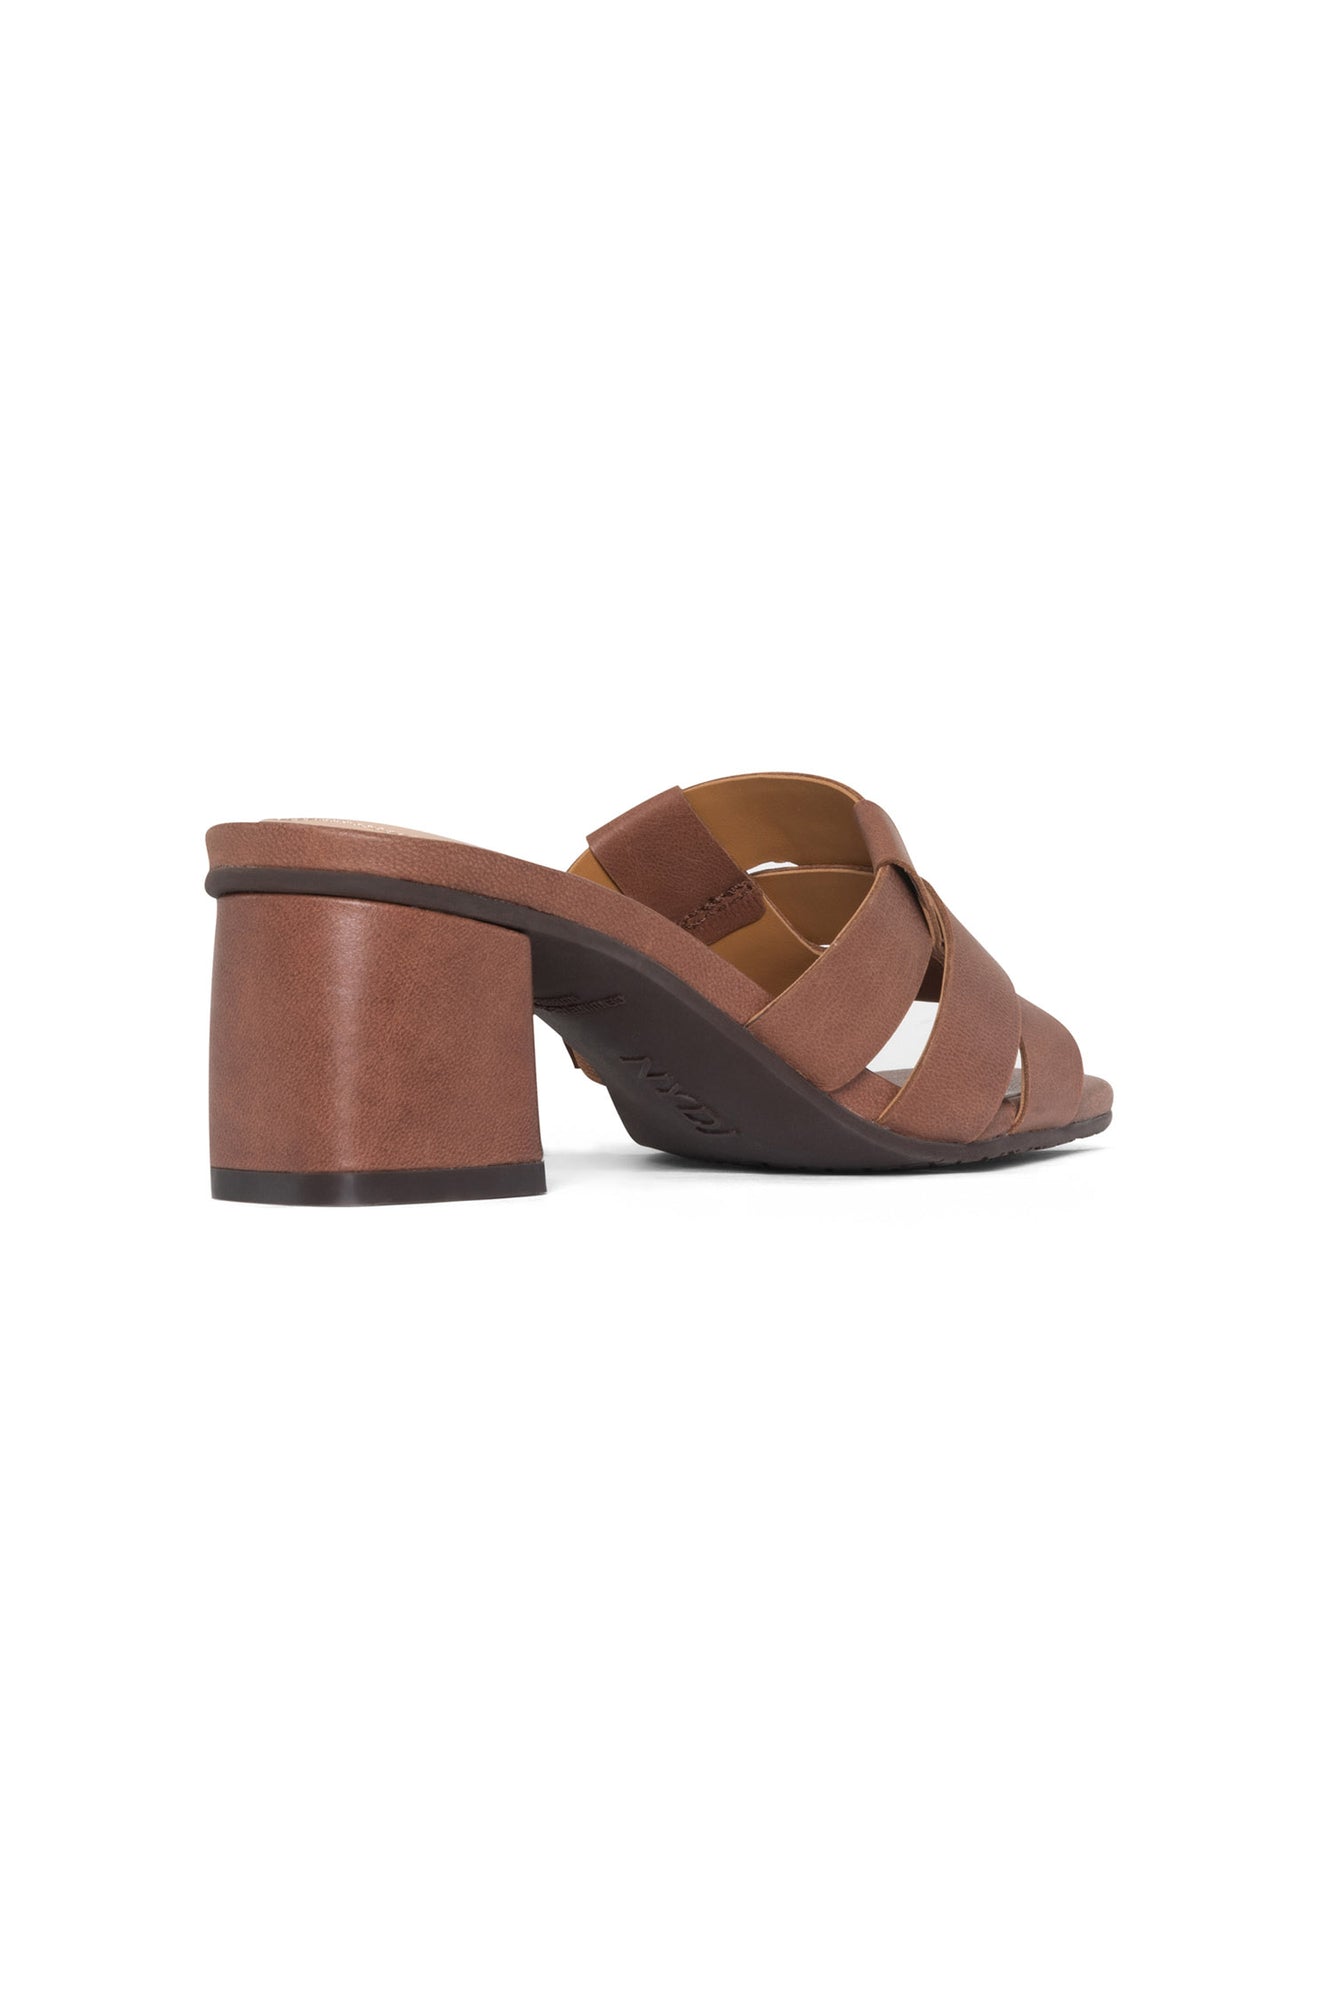 NYDJ Gloriana Mule Sandals In Leather - Cognac